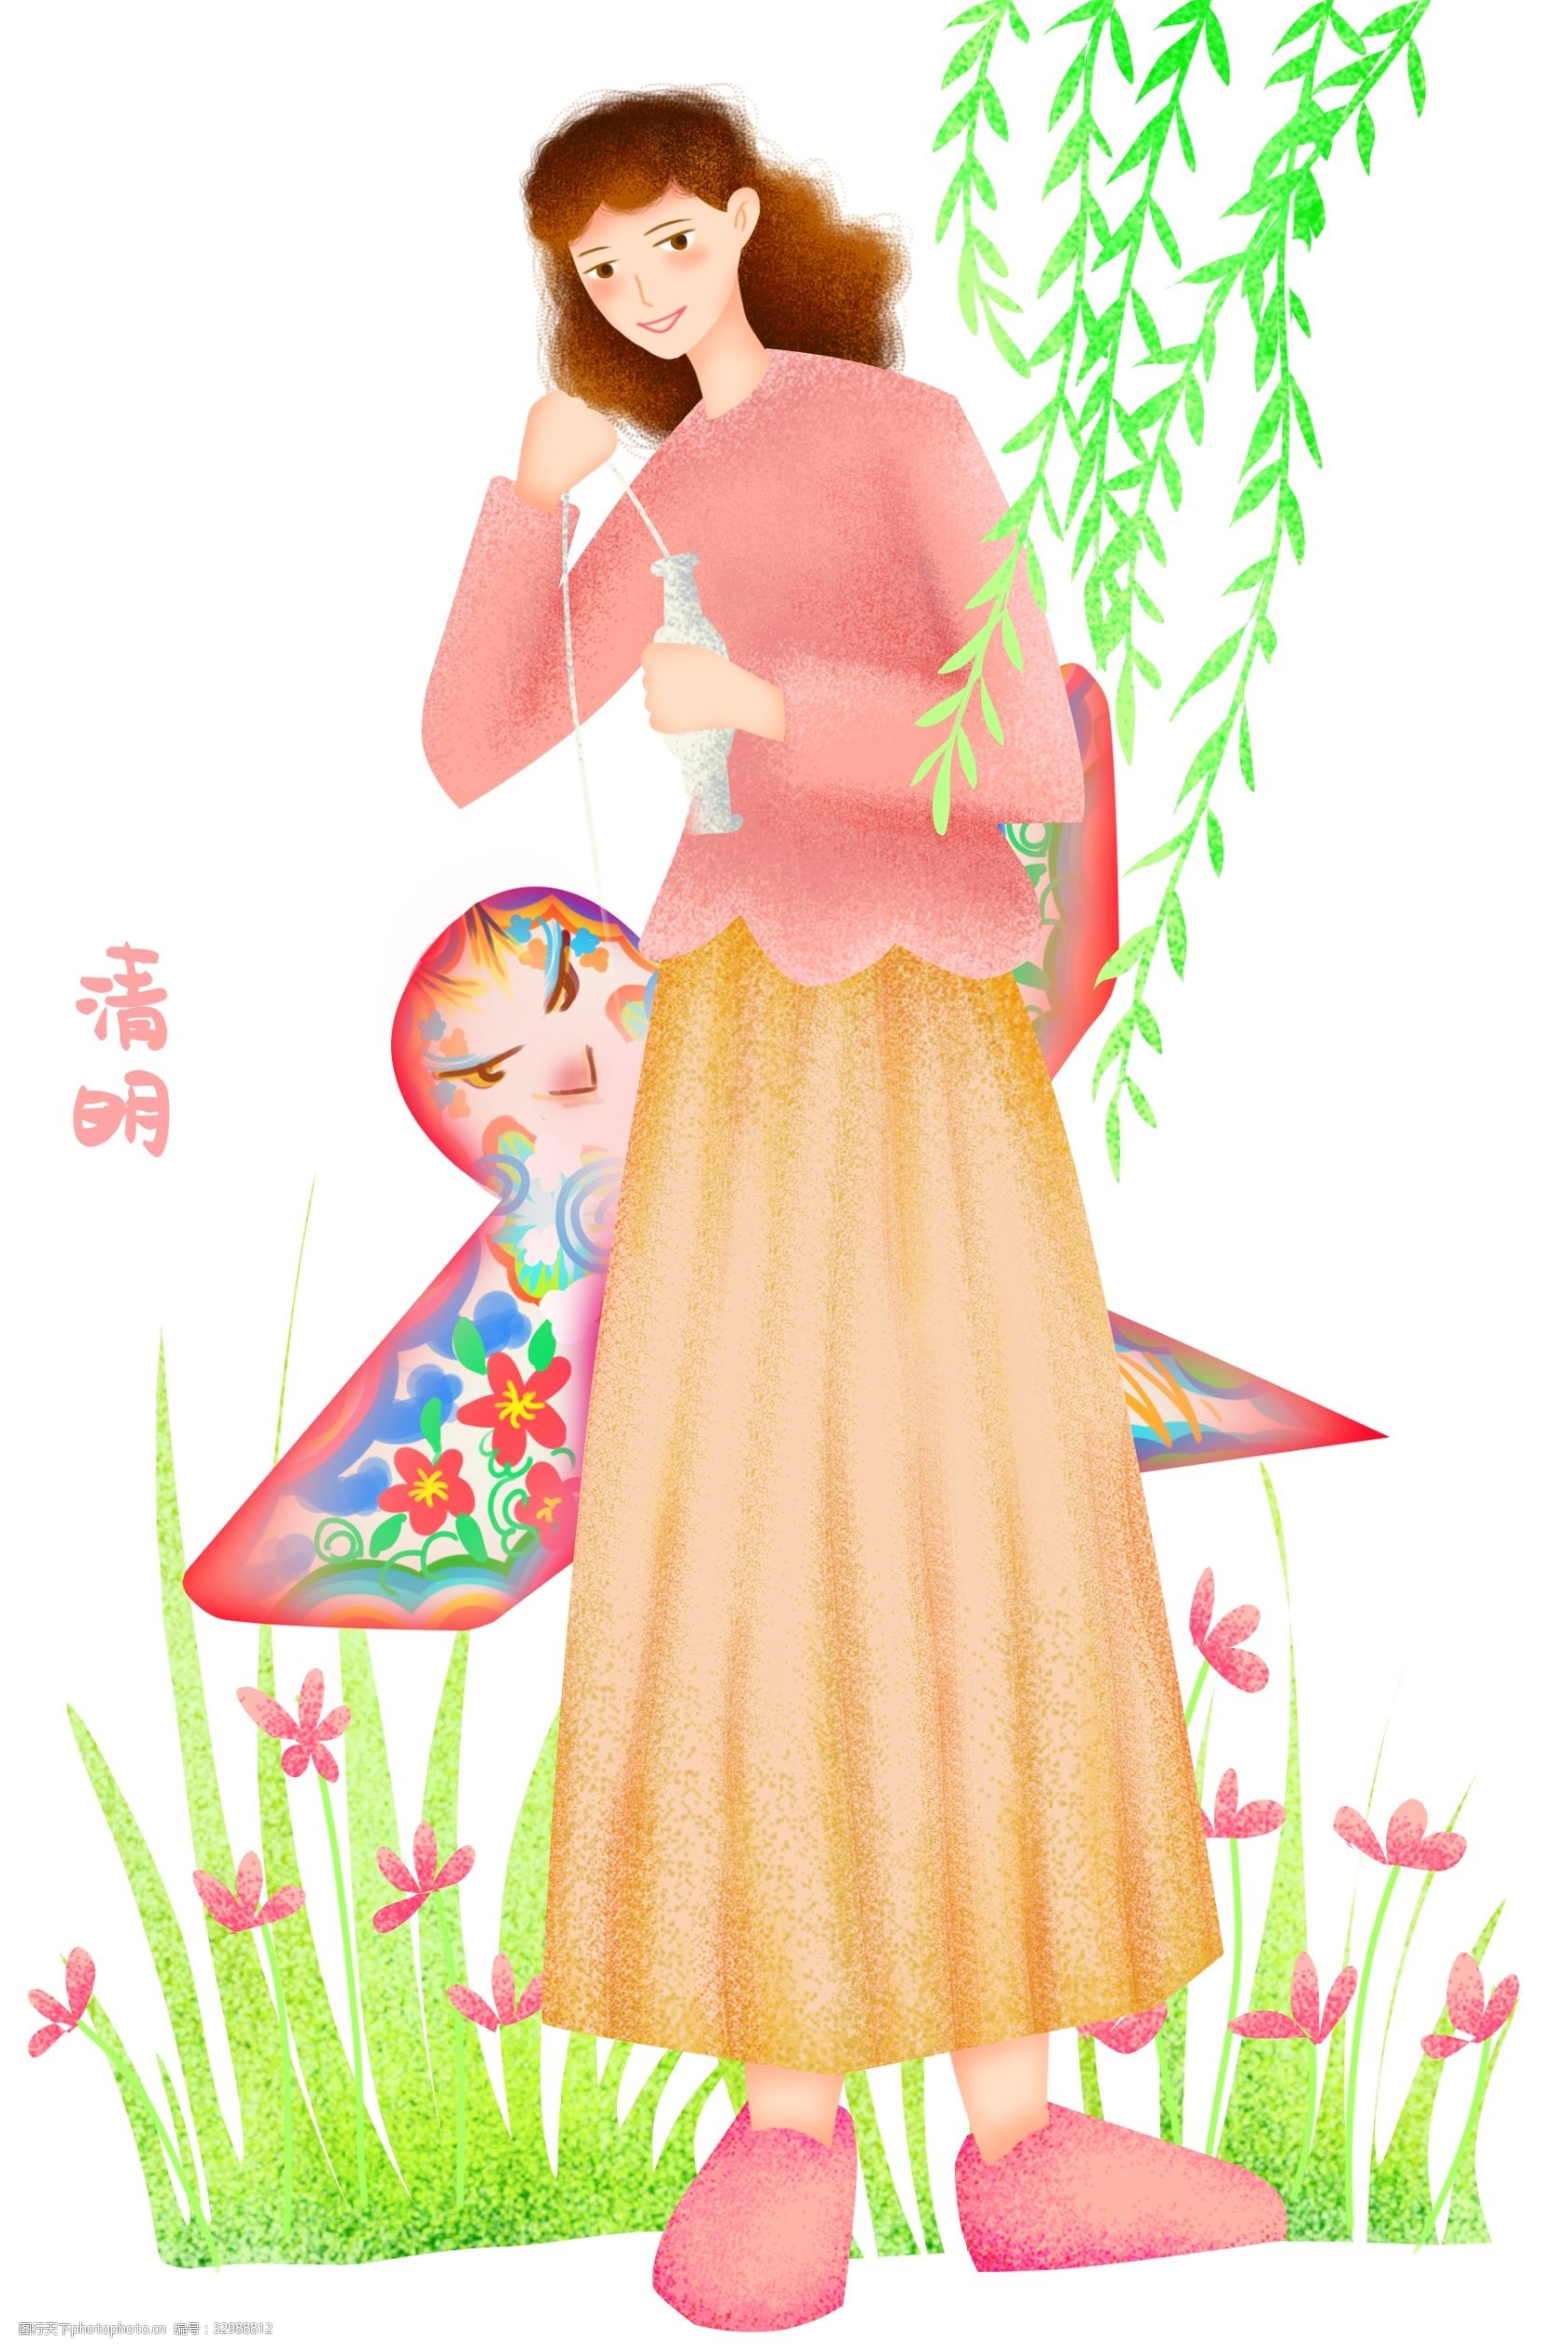 人物插画 拿风筝的女孩 红色的风筝 绿色的叶子 垂钓的柳树 卡通人物